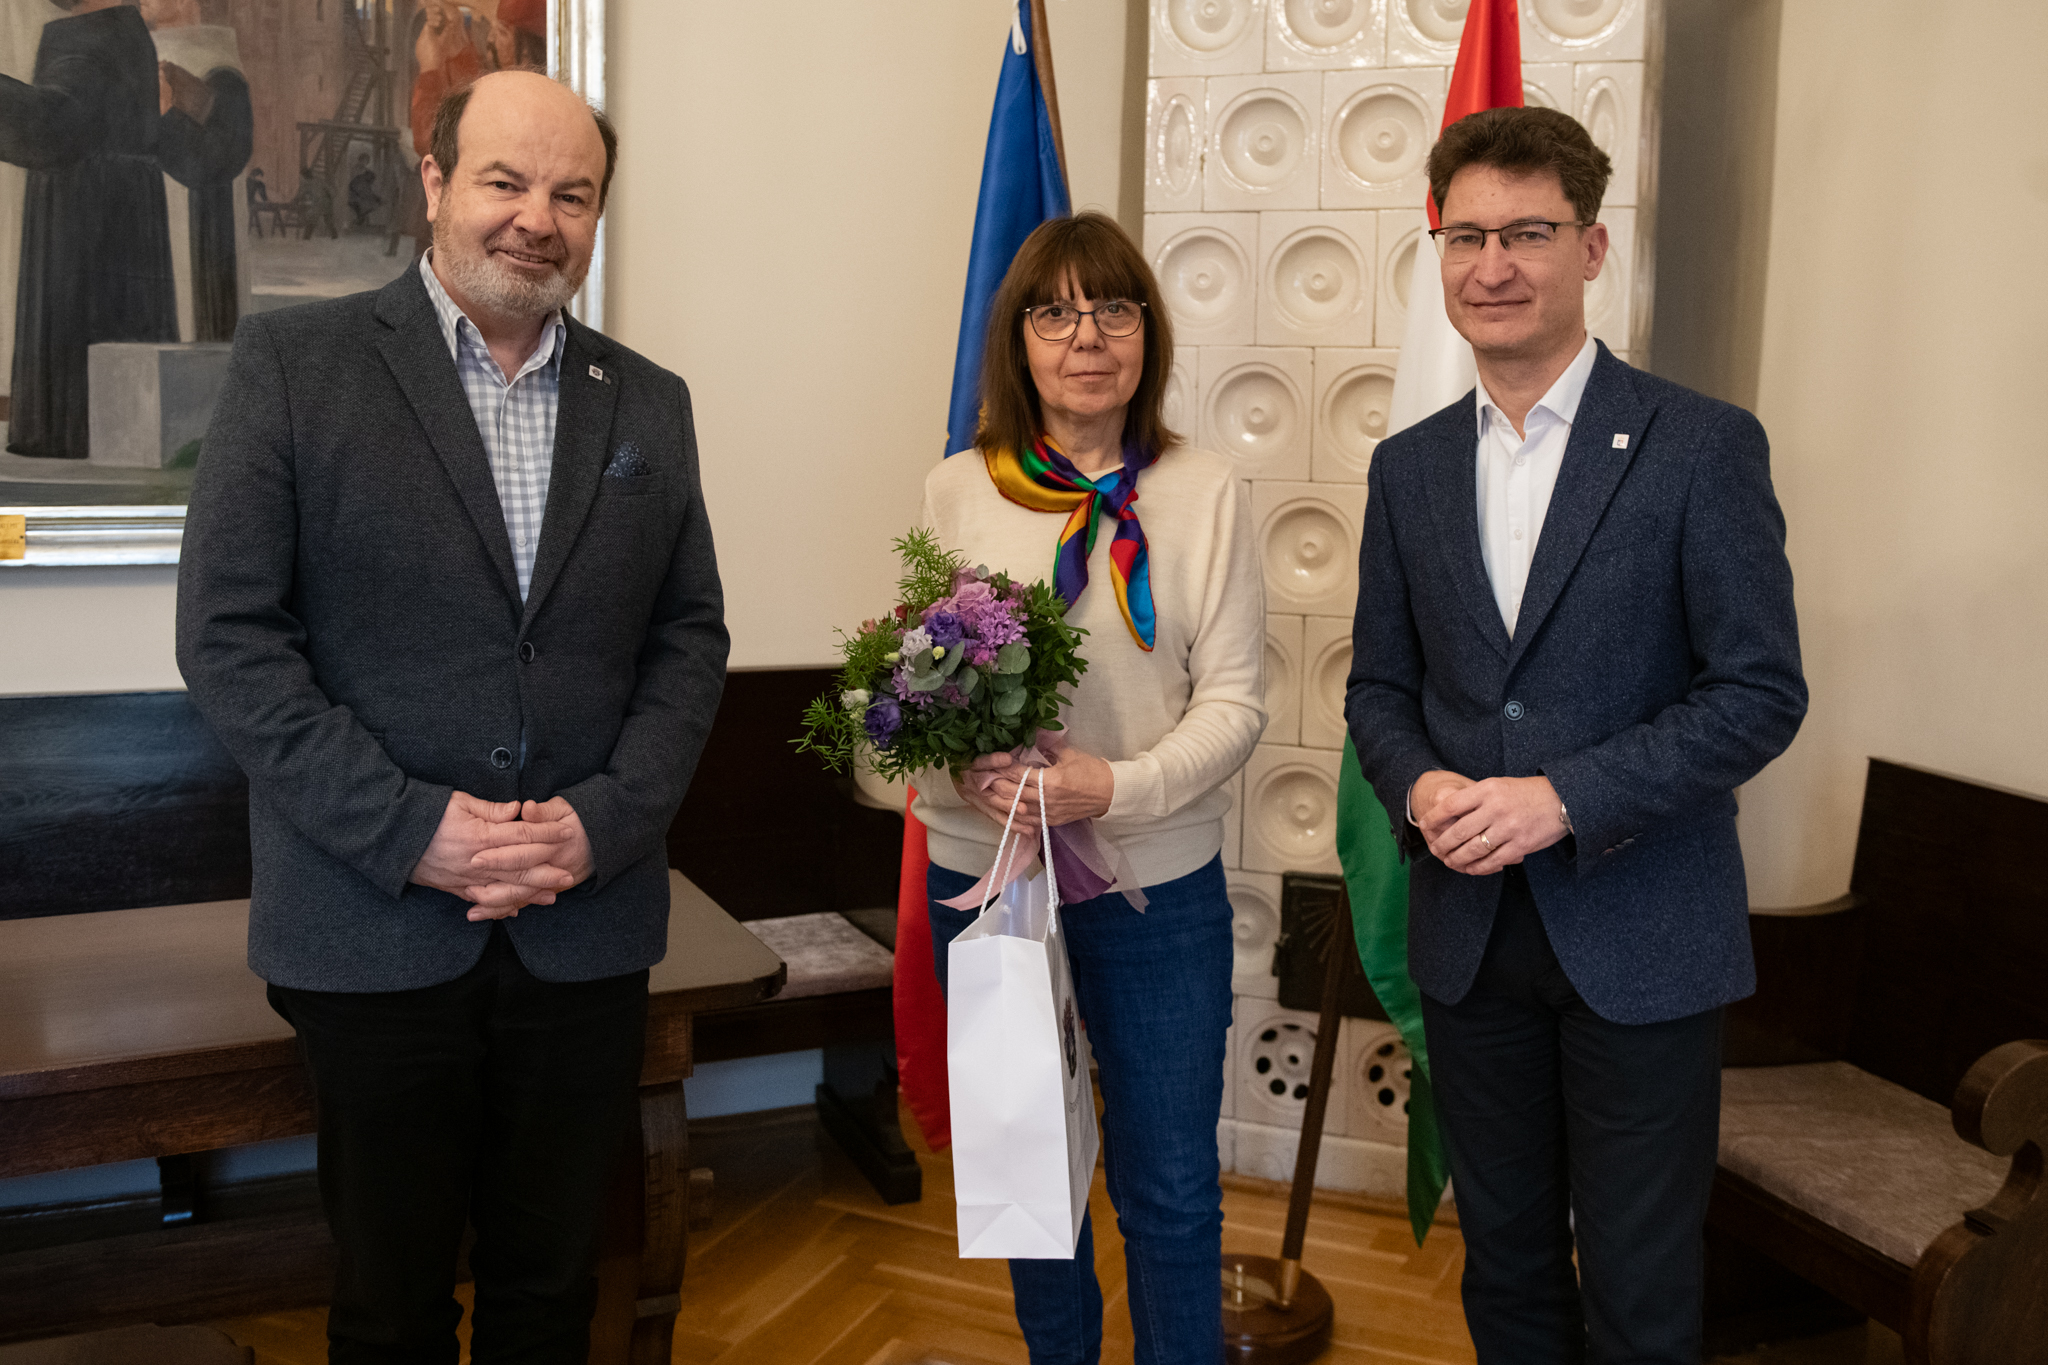 A Székesfehérvári Művészek Társaságának leköszönő elnökét, Végvári Beatrixot köszöntötték a Városházán